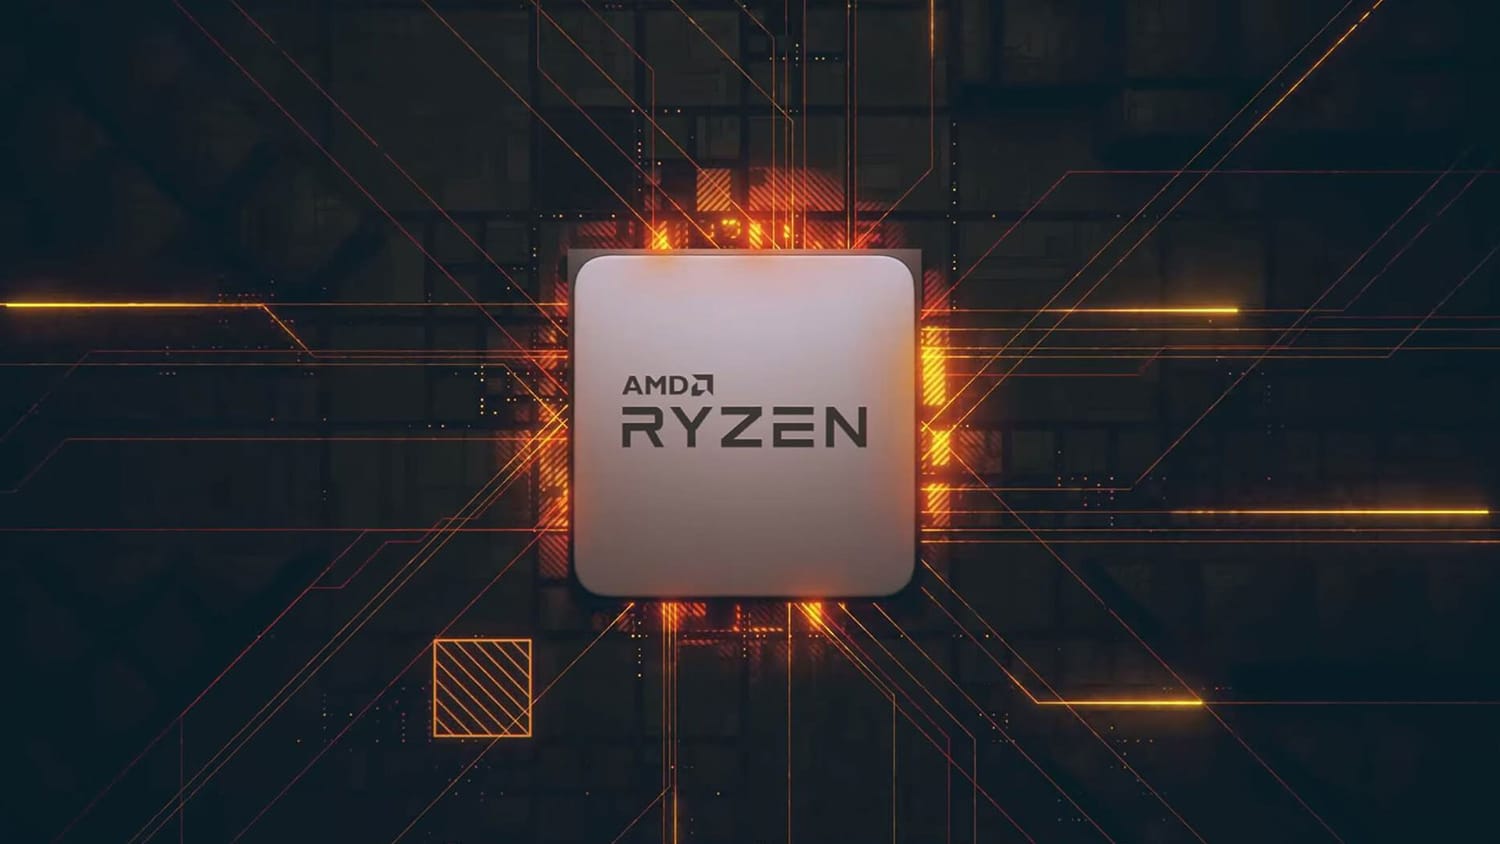 AMD chamará novos chips Ryzen com série Zen 3 5000: pelo menos 4 novos processadores serão anunciados hoje